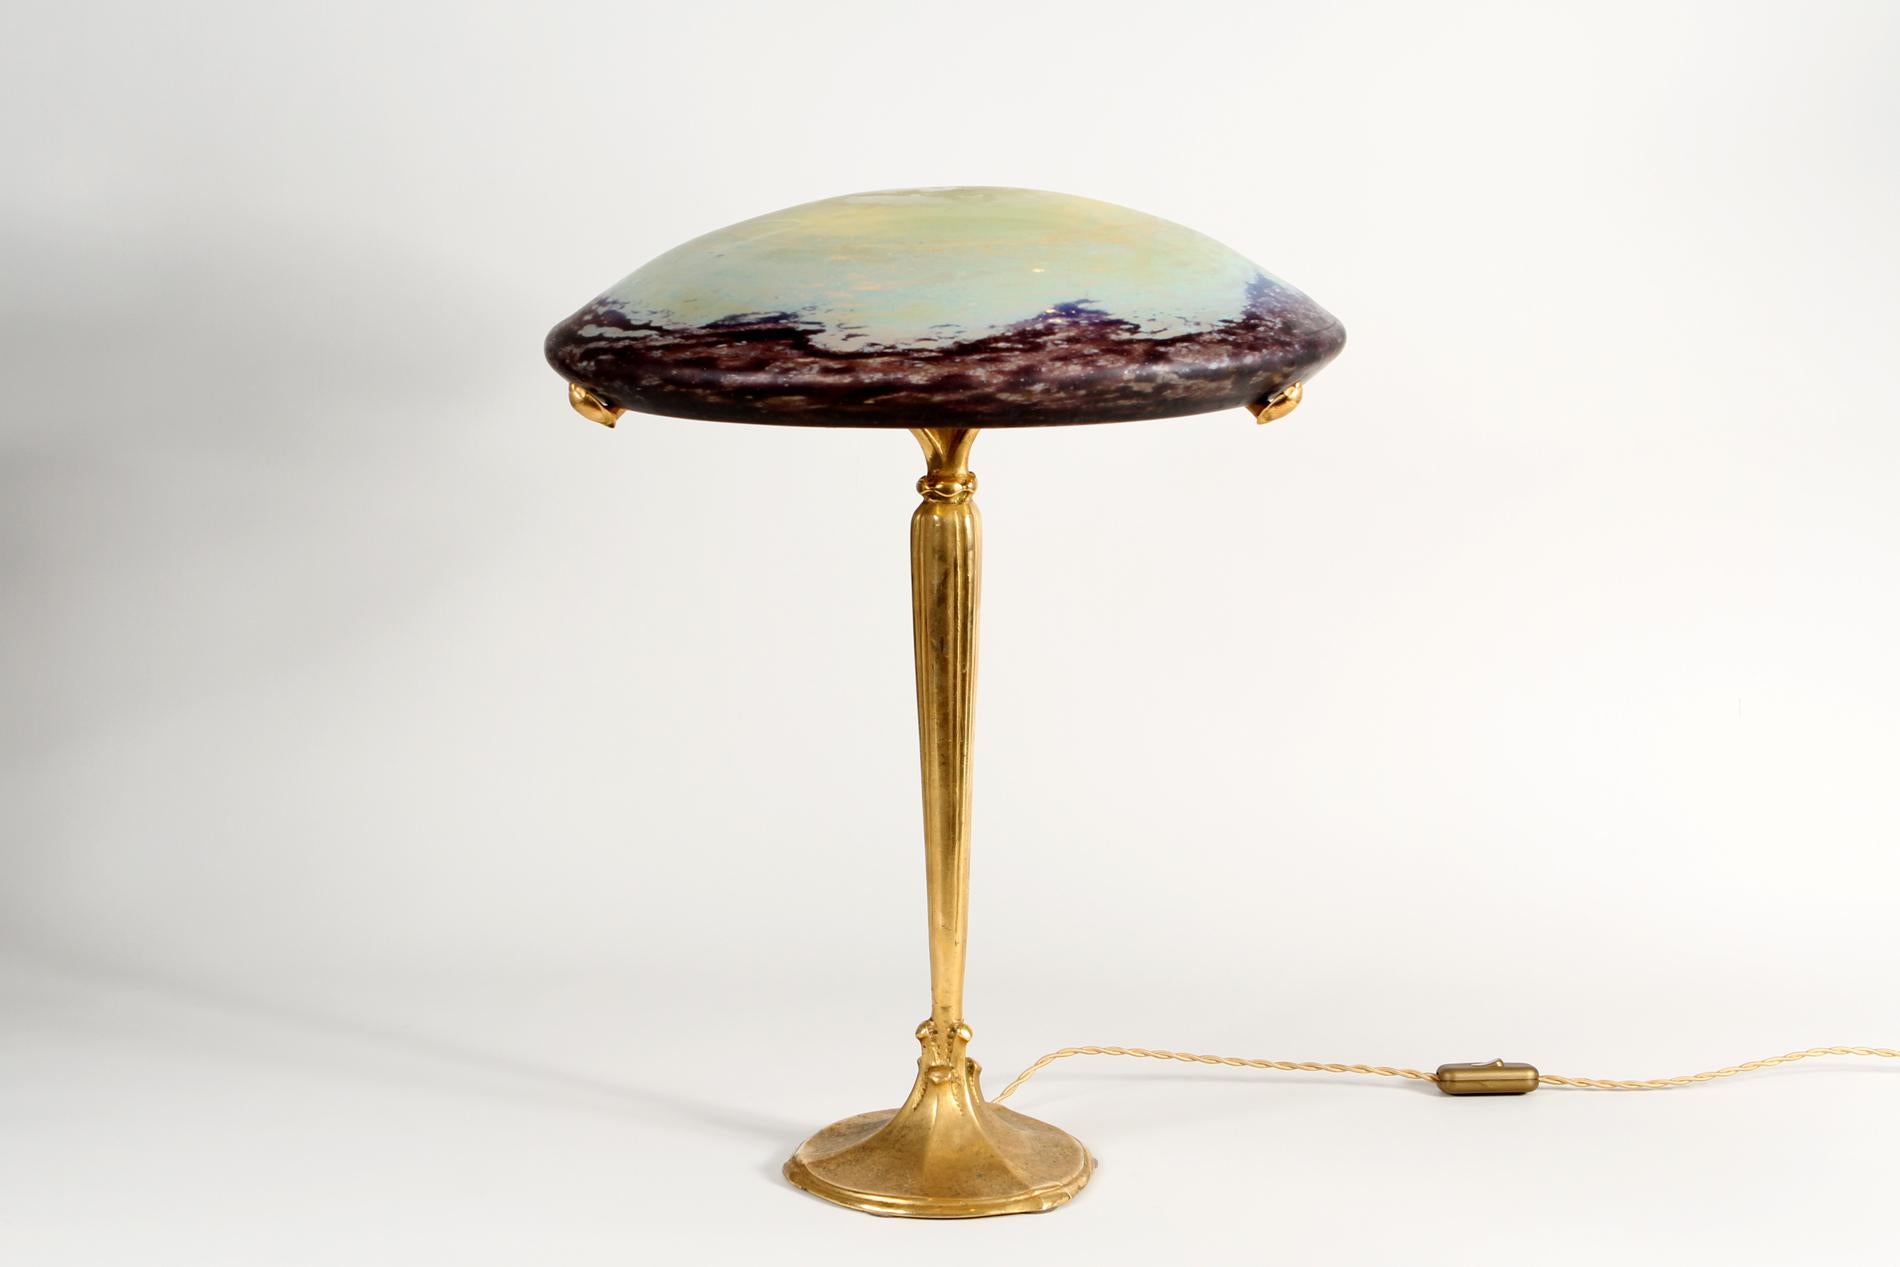 Lampe de table originale Art Deco en bronze doré avec décoration en relief par Jules Cayette qui était un célèbre artiste de fer forgé de l'époque, le modèle est appelé 